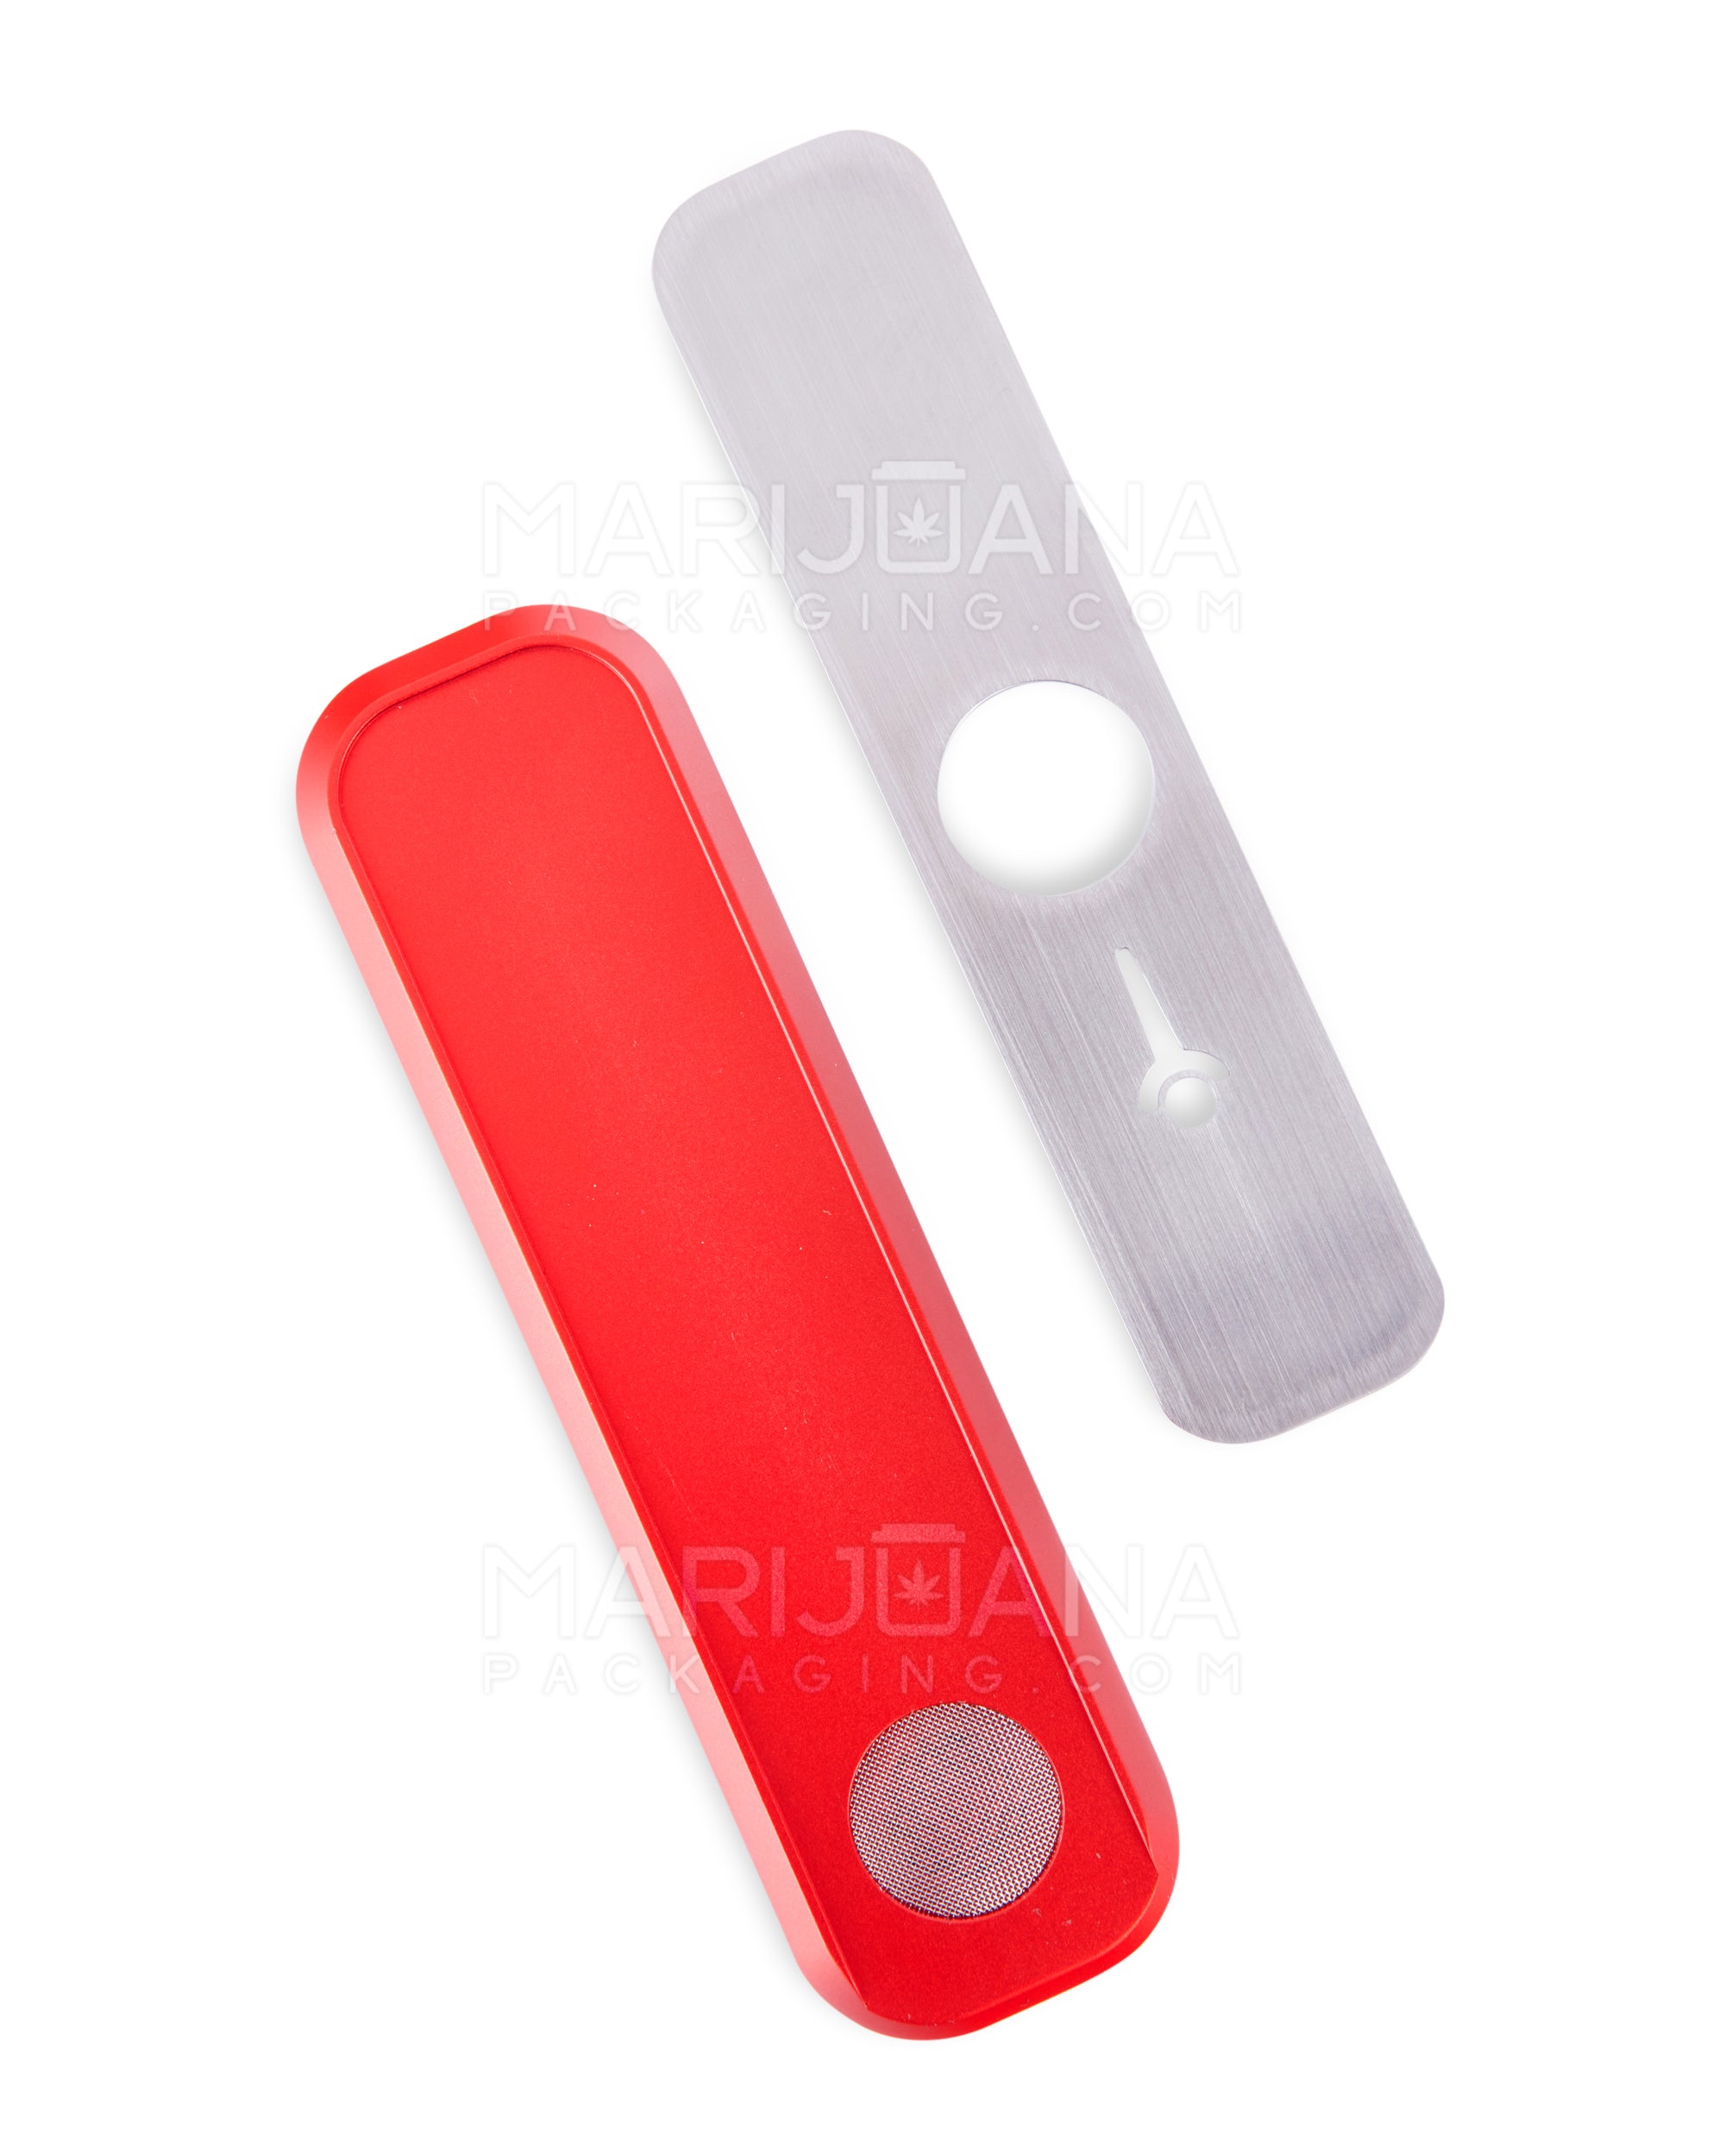 GENIUS PIPE | Mini Color Magnetic Slider Pipe | 5in Long - Metal - Red - 5